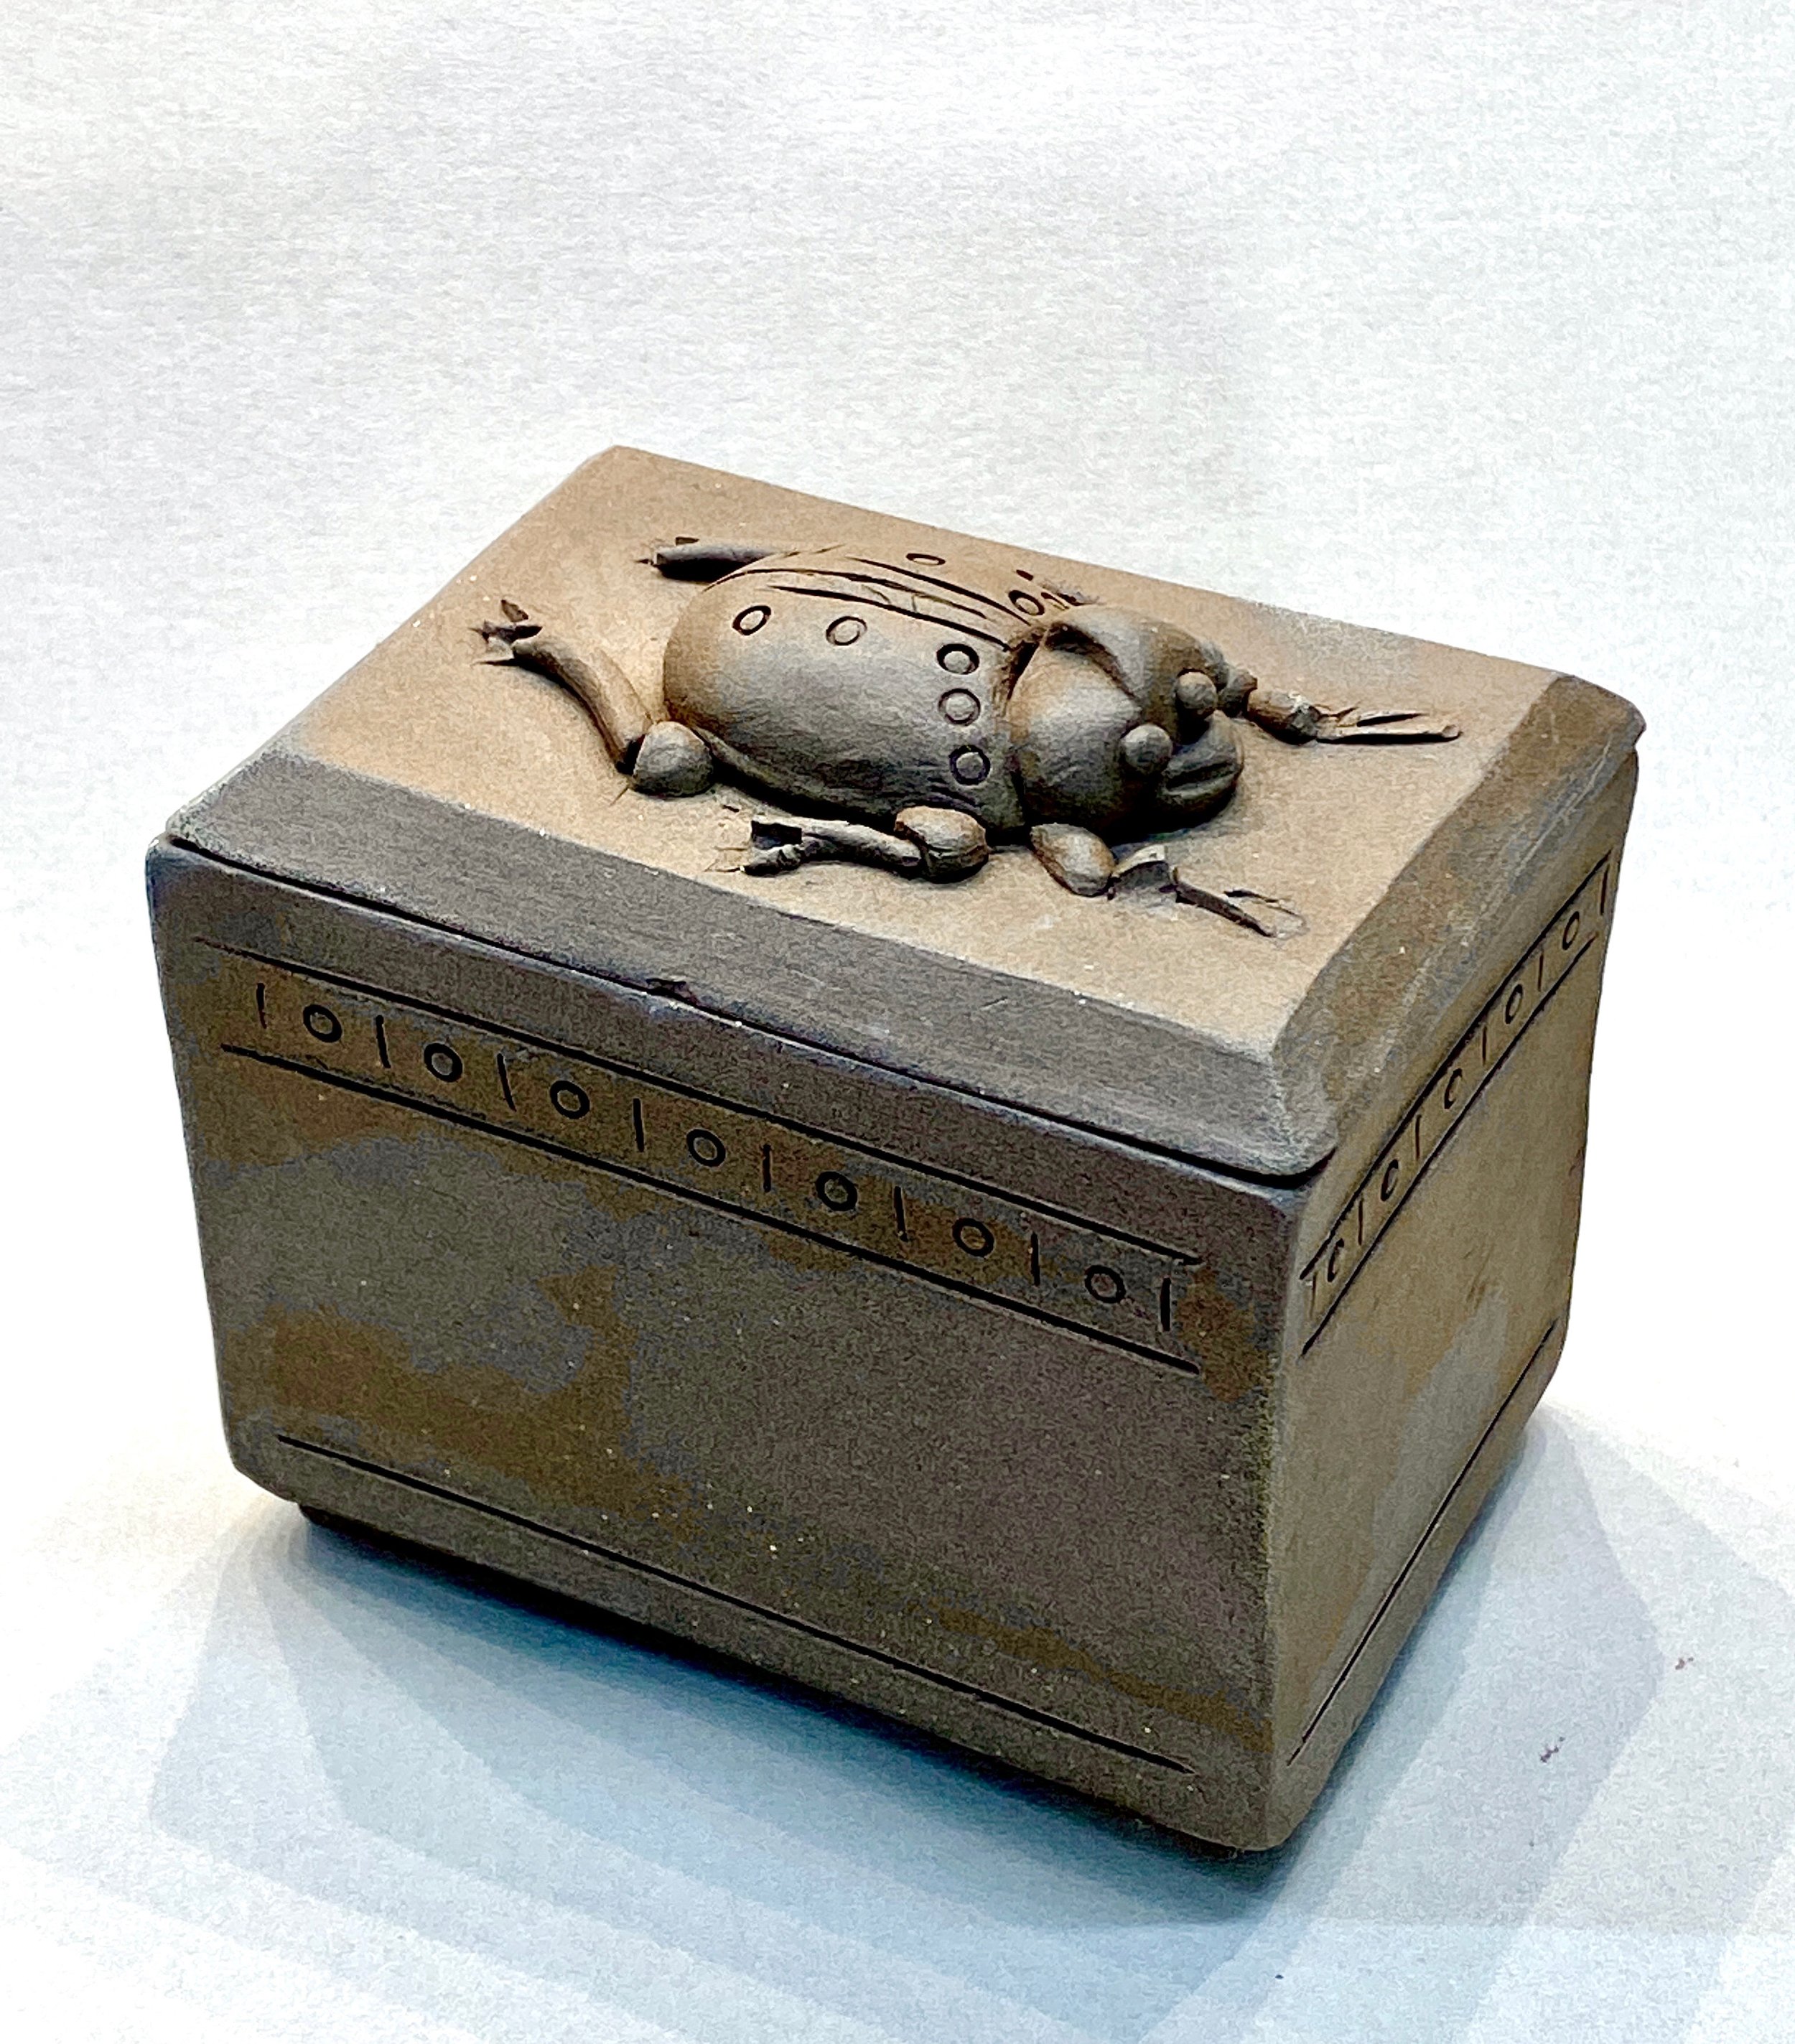 Bug Box